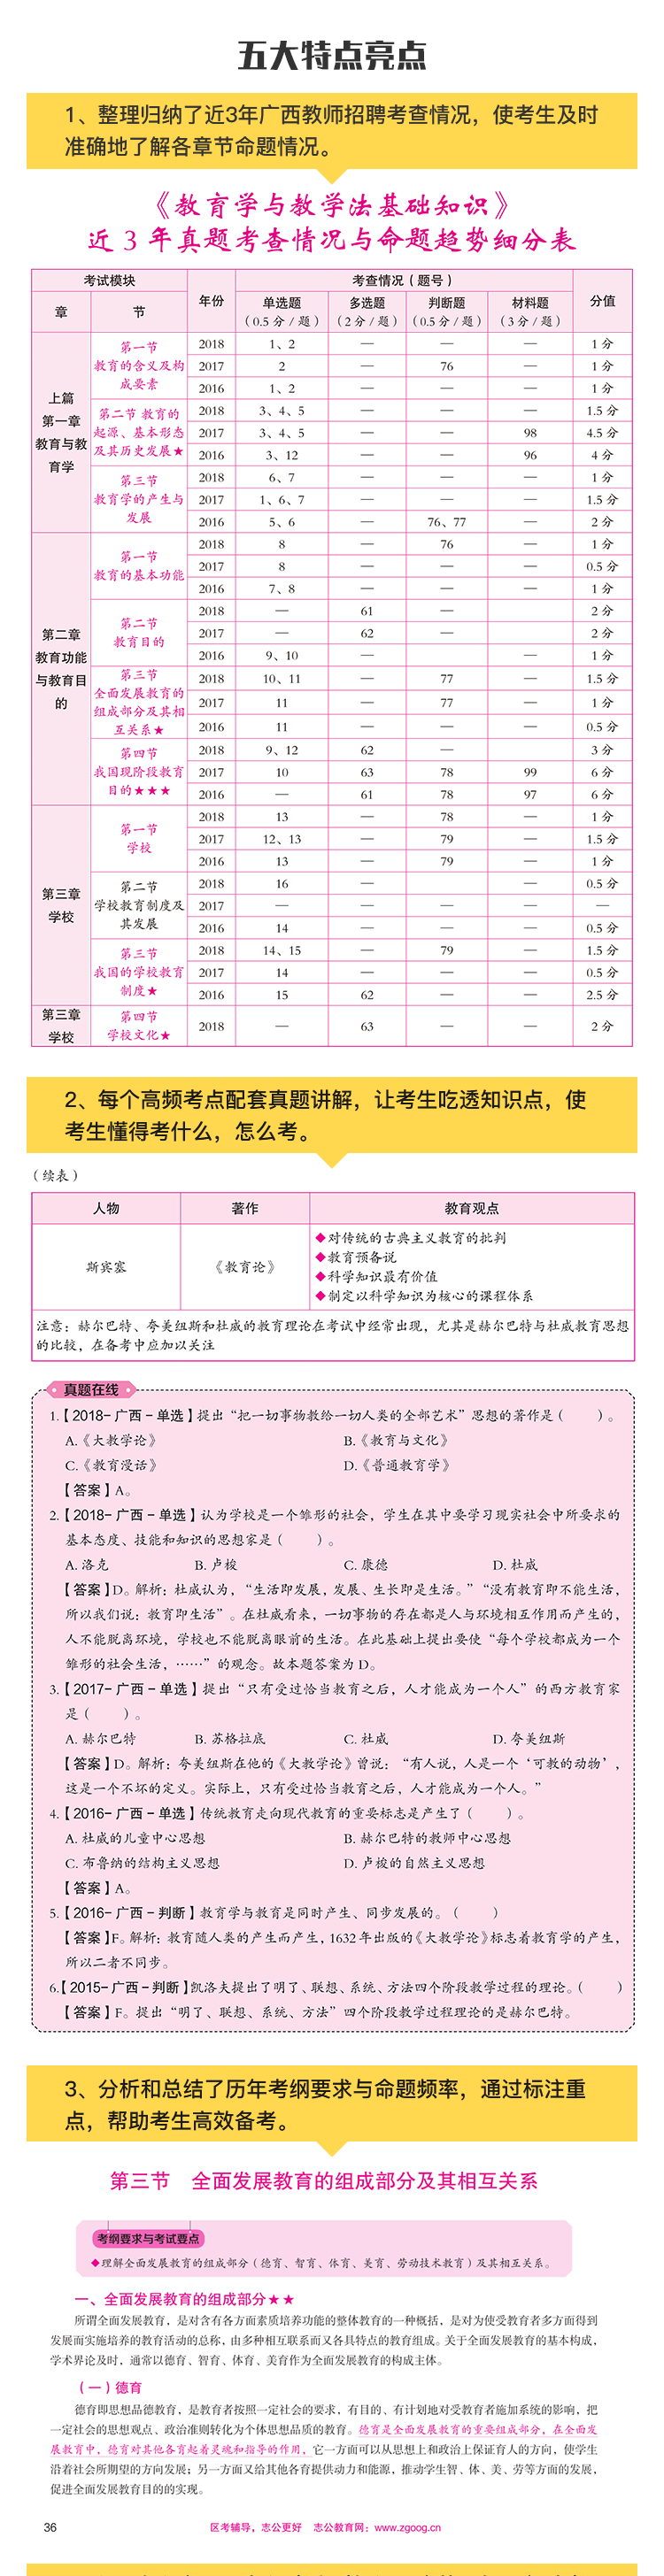 2019年广西中小学教师公开招聘考试专用教材教详情1220_02.png